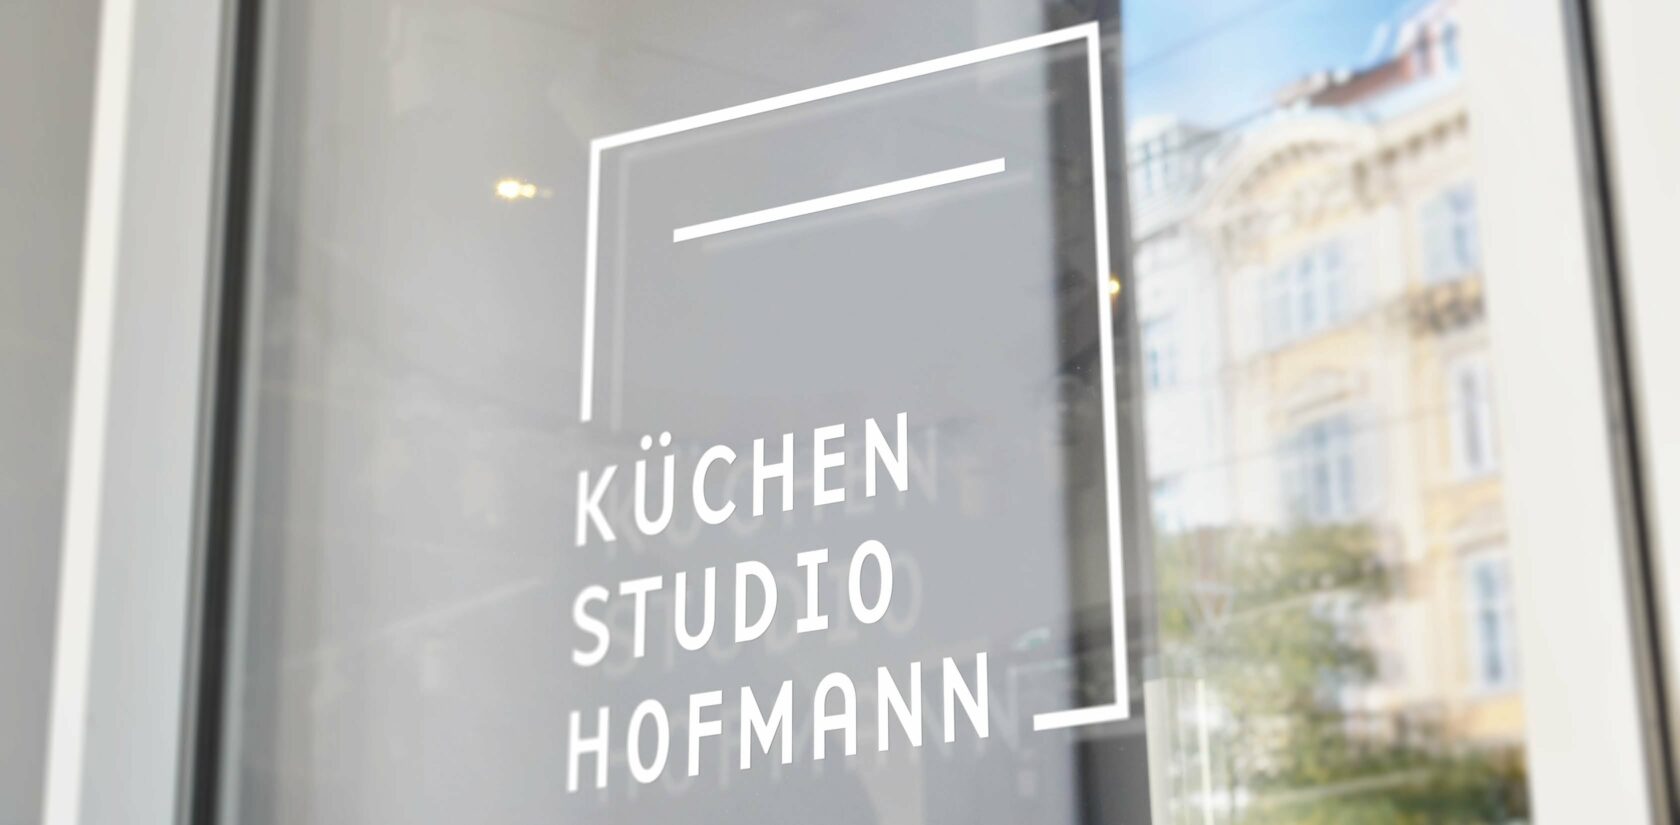 Bild von dem Logo vom Küchenstudio Hofmann auf einem Fenster